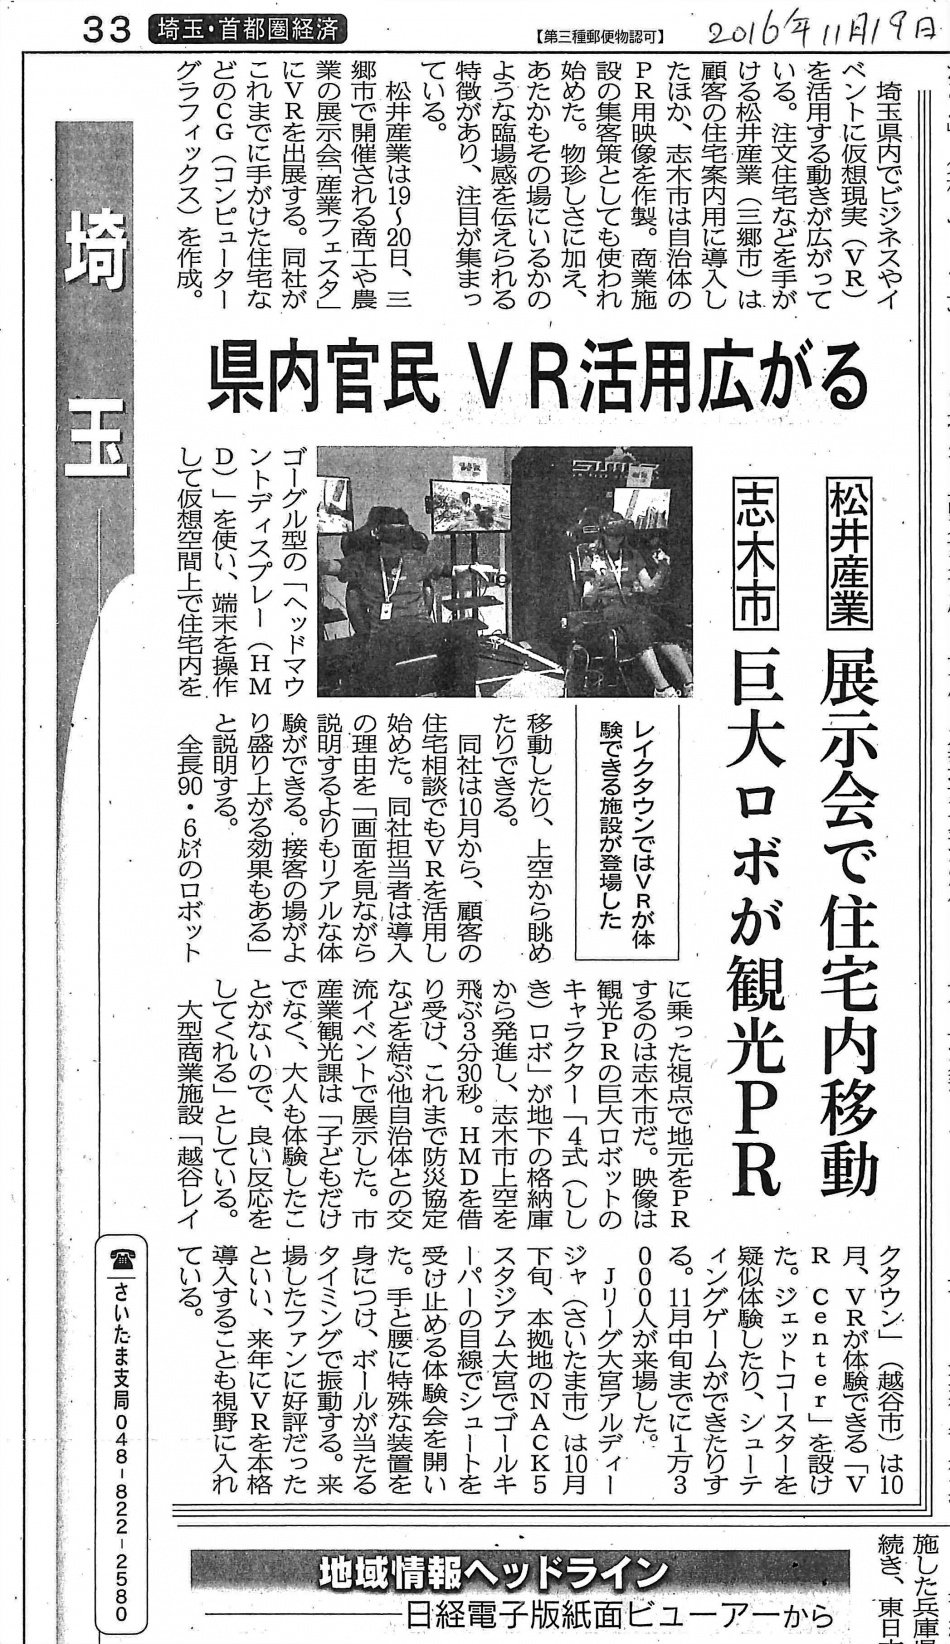 20161119日本経済新聞 埼玉版「県内官民VR活用」